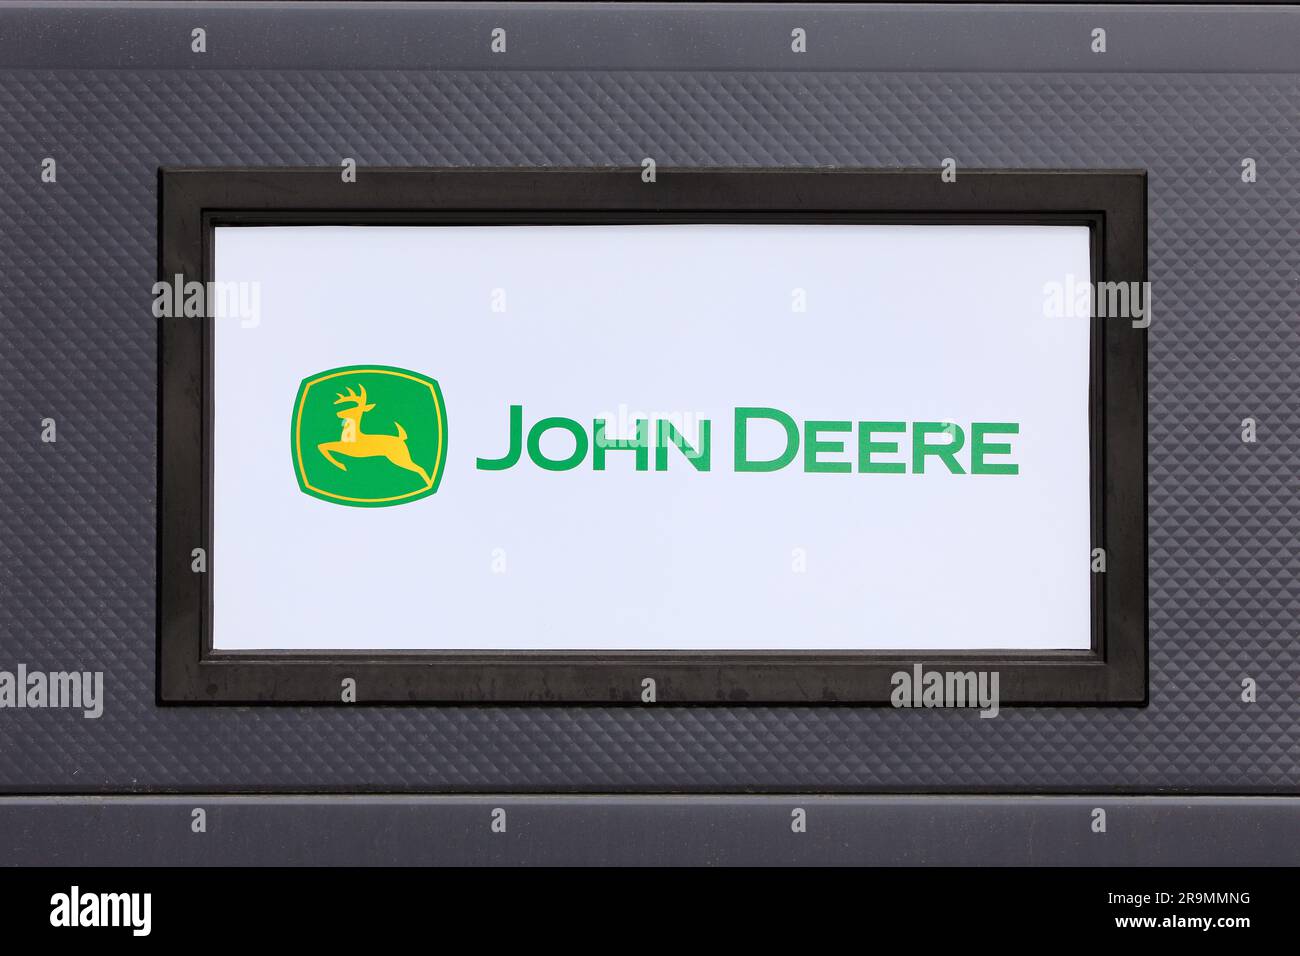 Logo John Deere sur le mur. Deere & Company est une marque américaine et un fabricant d'EG. machines agricoles et équipement industriel. Salo, FI. 25 juin 2023 Banque D'Images